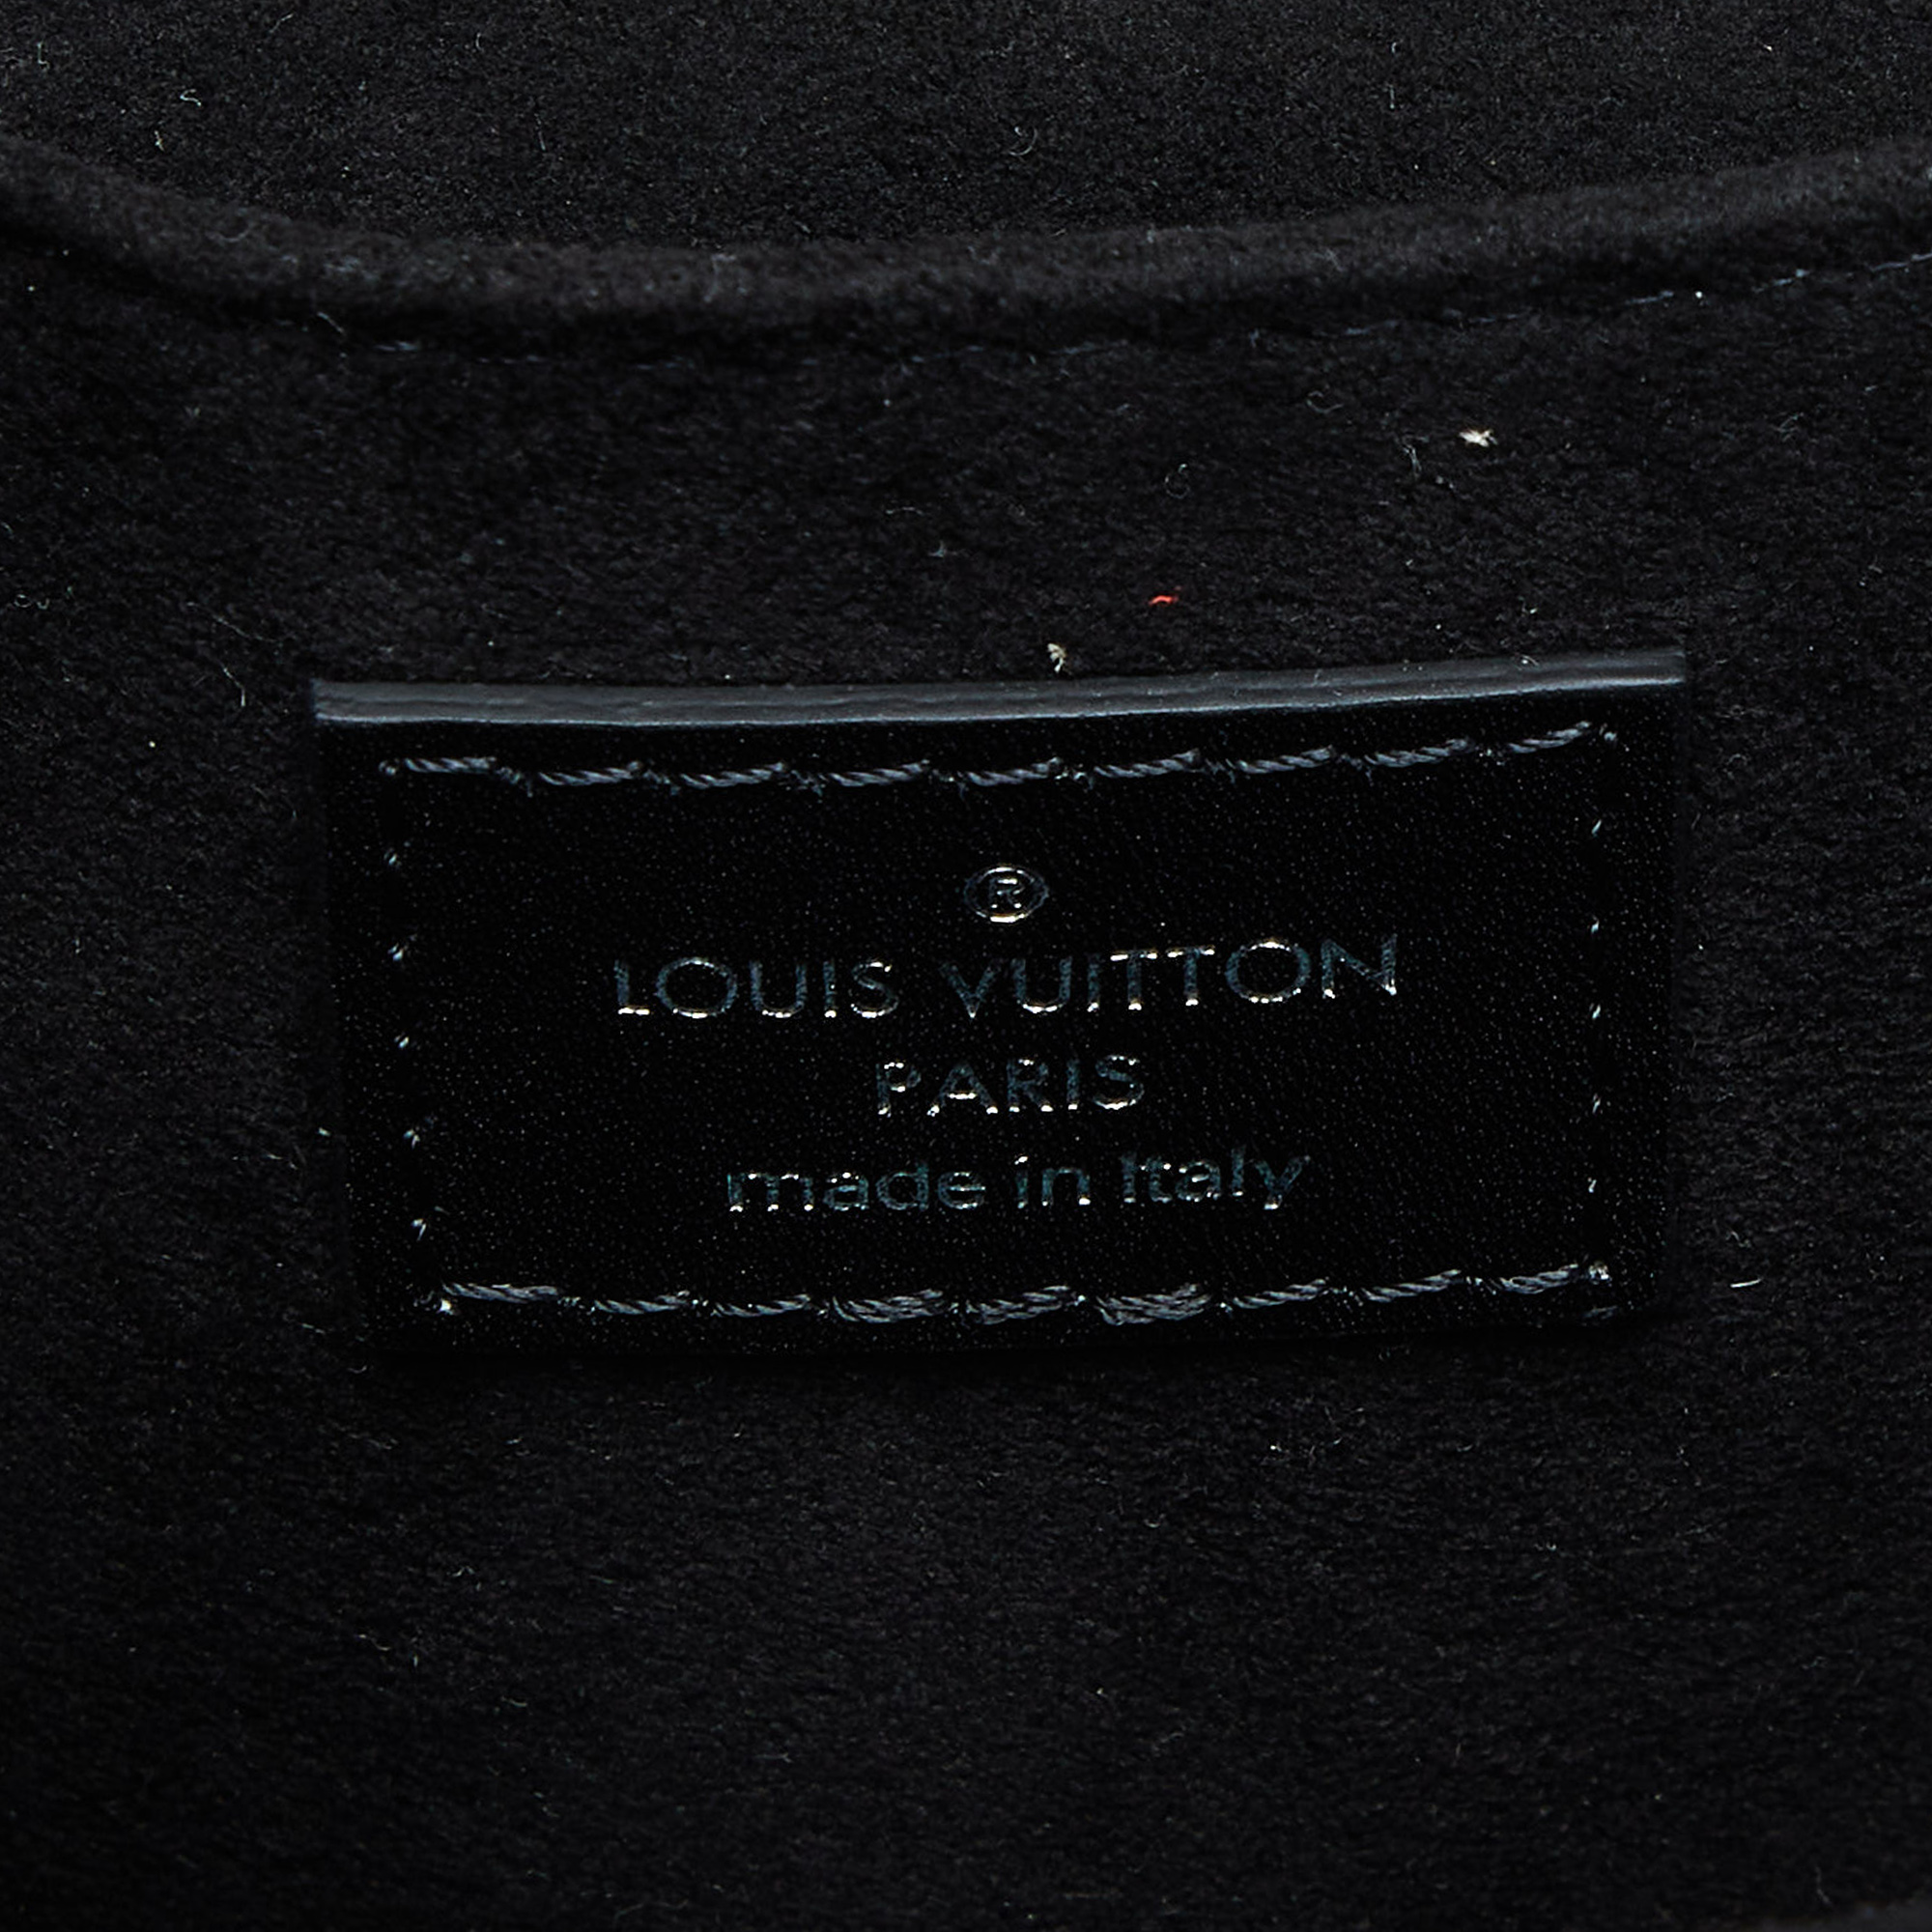 Louis Vuitton Multicolor Epi Monogram Floral Mini Pochette Metis Bag